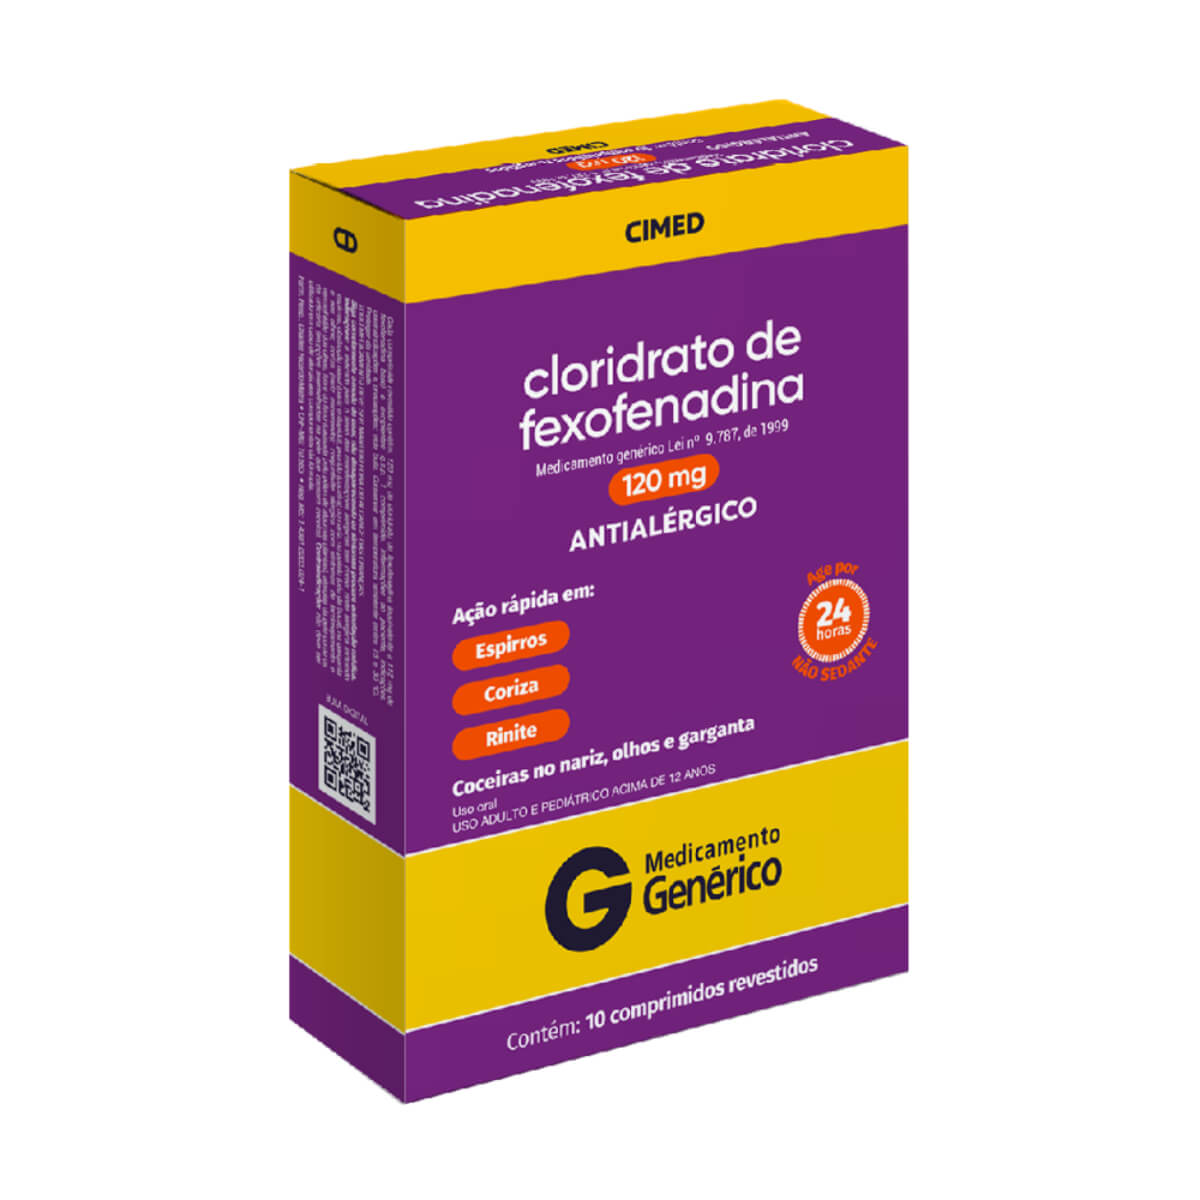 Cloridrato de Fexofenadina 120mg 10 Comprimidos Revestidos Cimed Generico